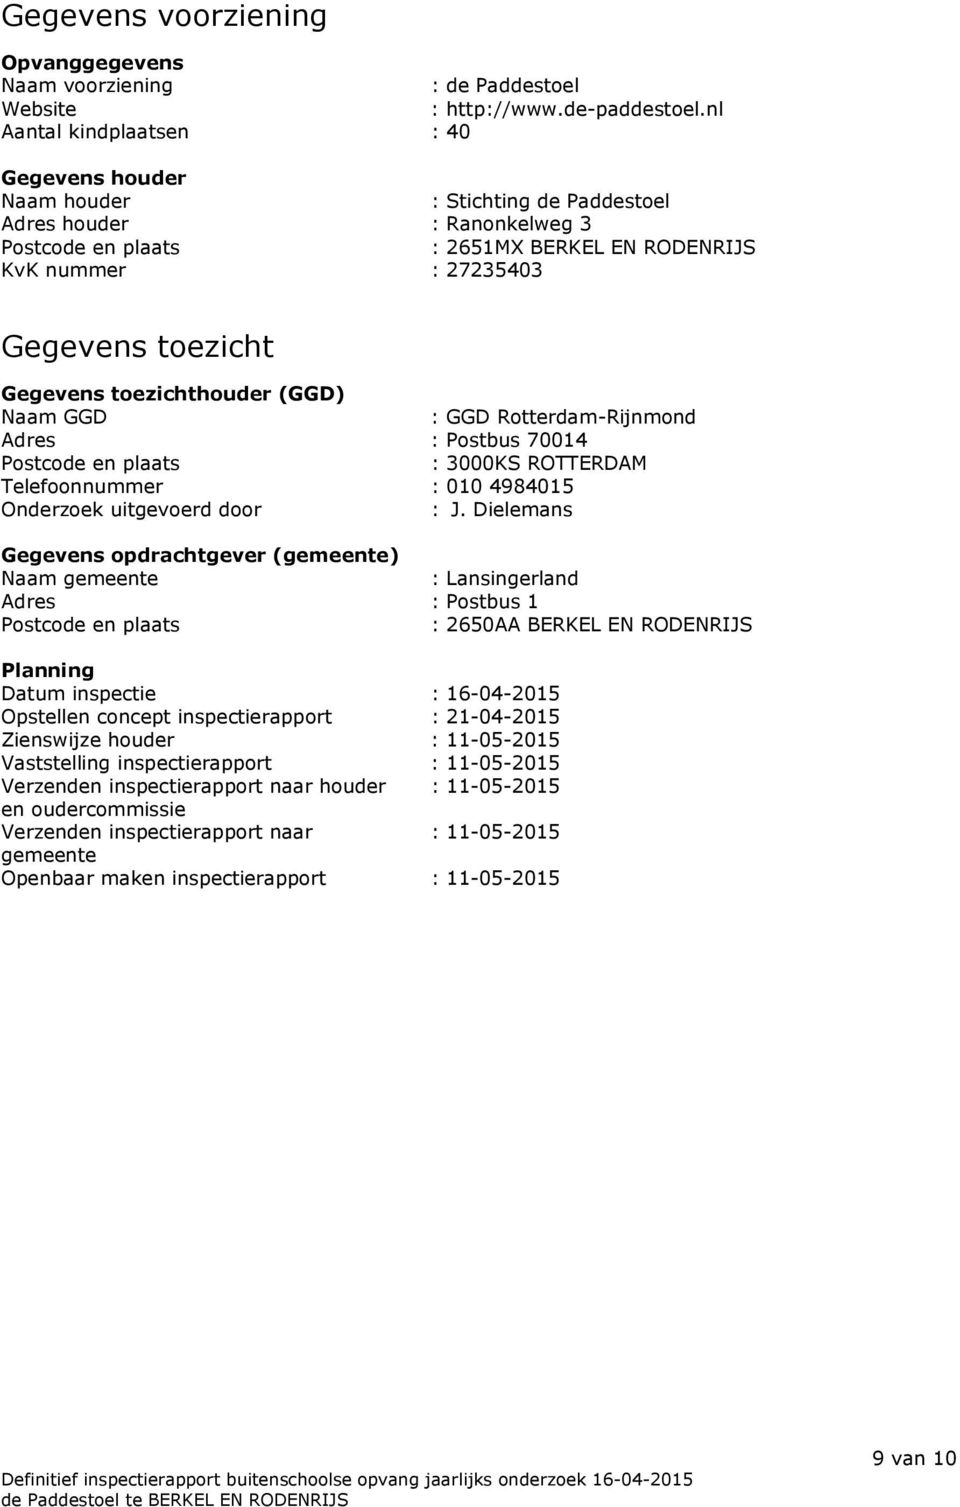 Gegevens toezichthouder (GGD) Naam GGD : GGD Rotterdam-Rijnmond Adres : Postbus 70014 Postcode en plaats : 3000KS ROTTERDAM Telefoonnummer : 010 4984015 Onderzoek uitgevoerd door : J.